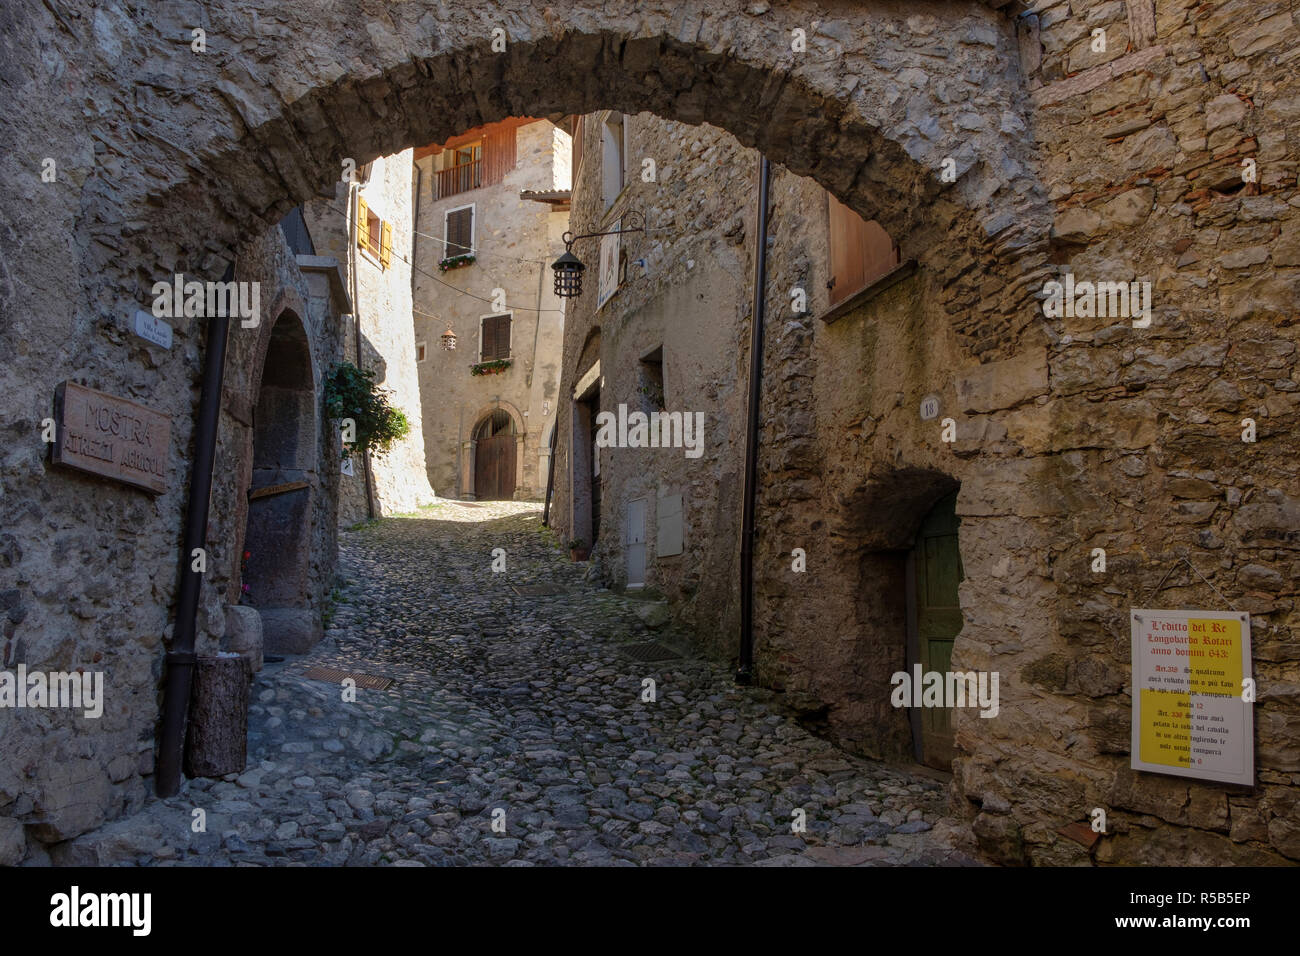 Il borgo medioevale di Canale di Tenno, Lago di Garda, provincia di Trento, Trentino, Italia Foto Stock